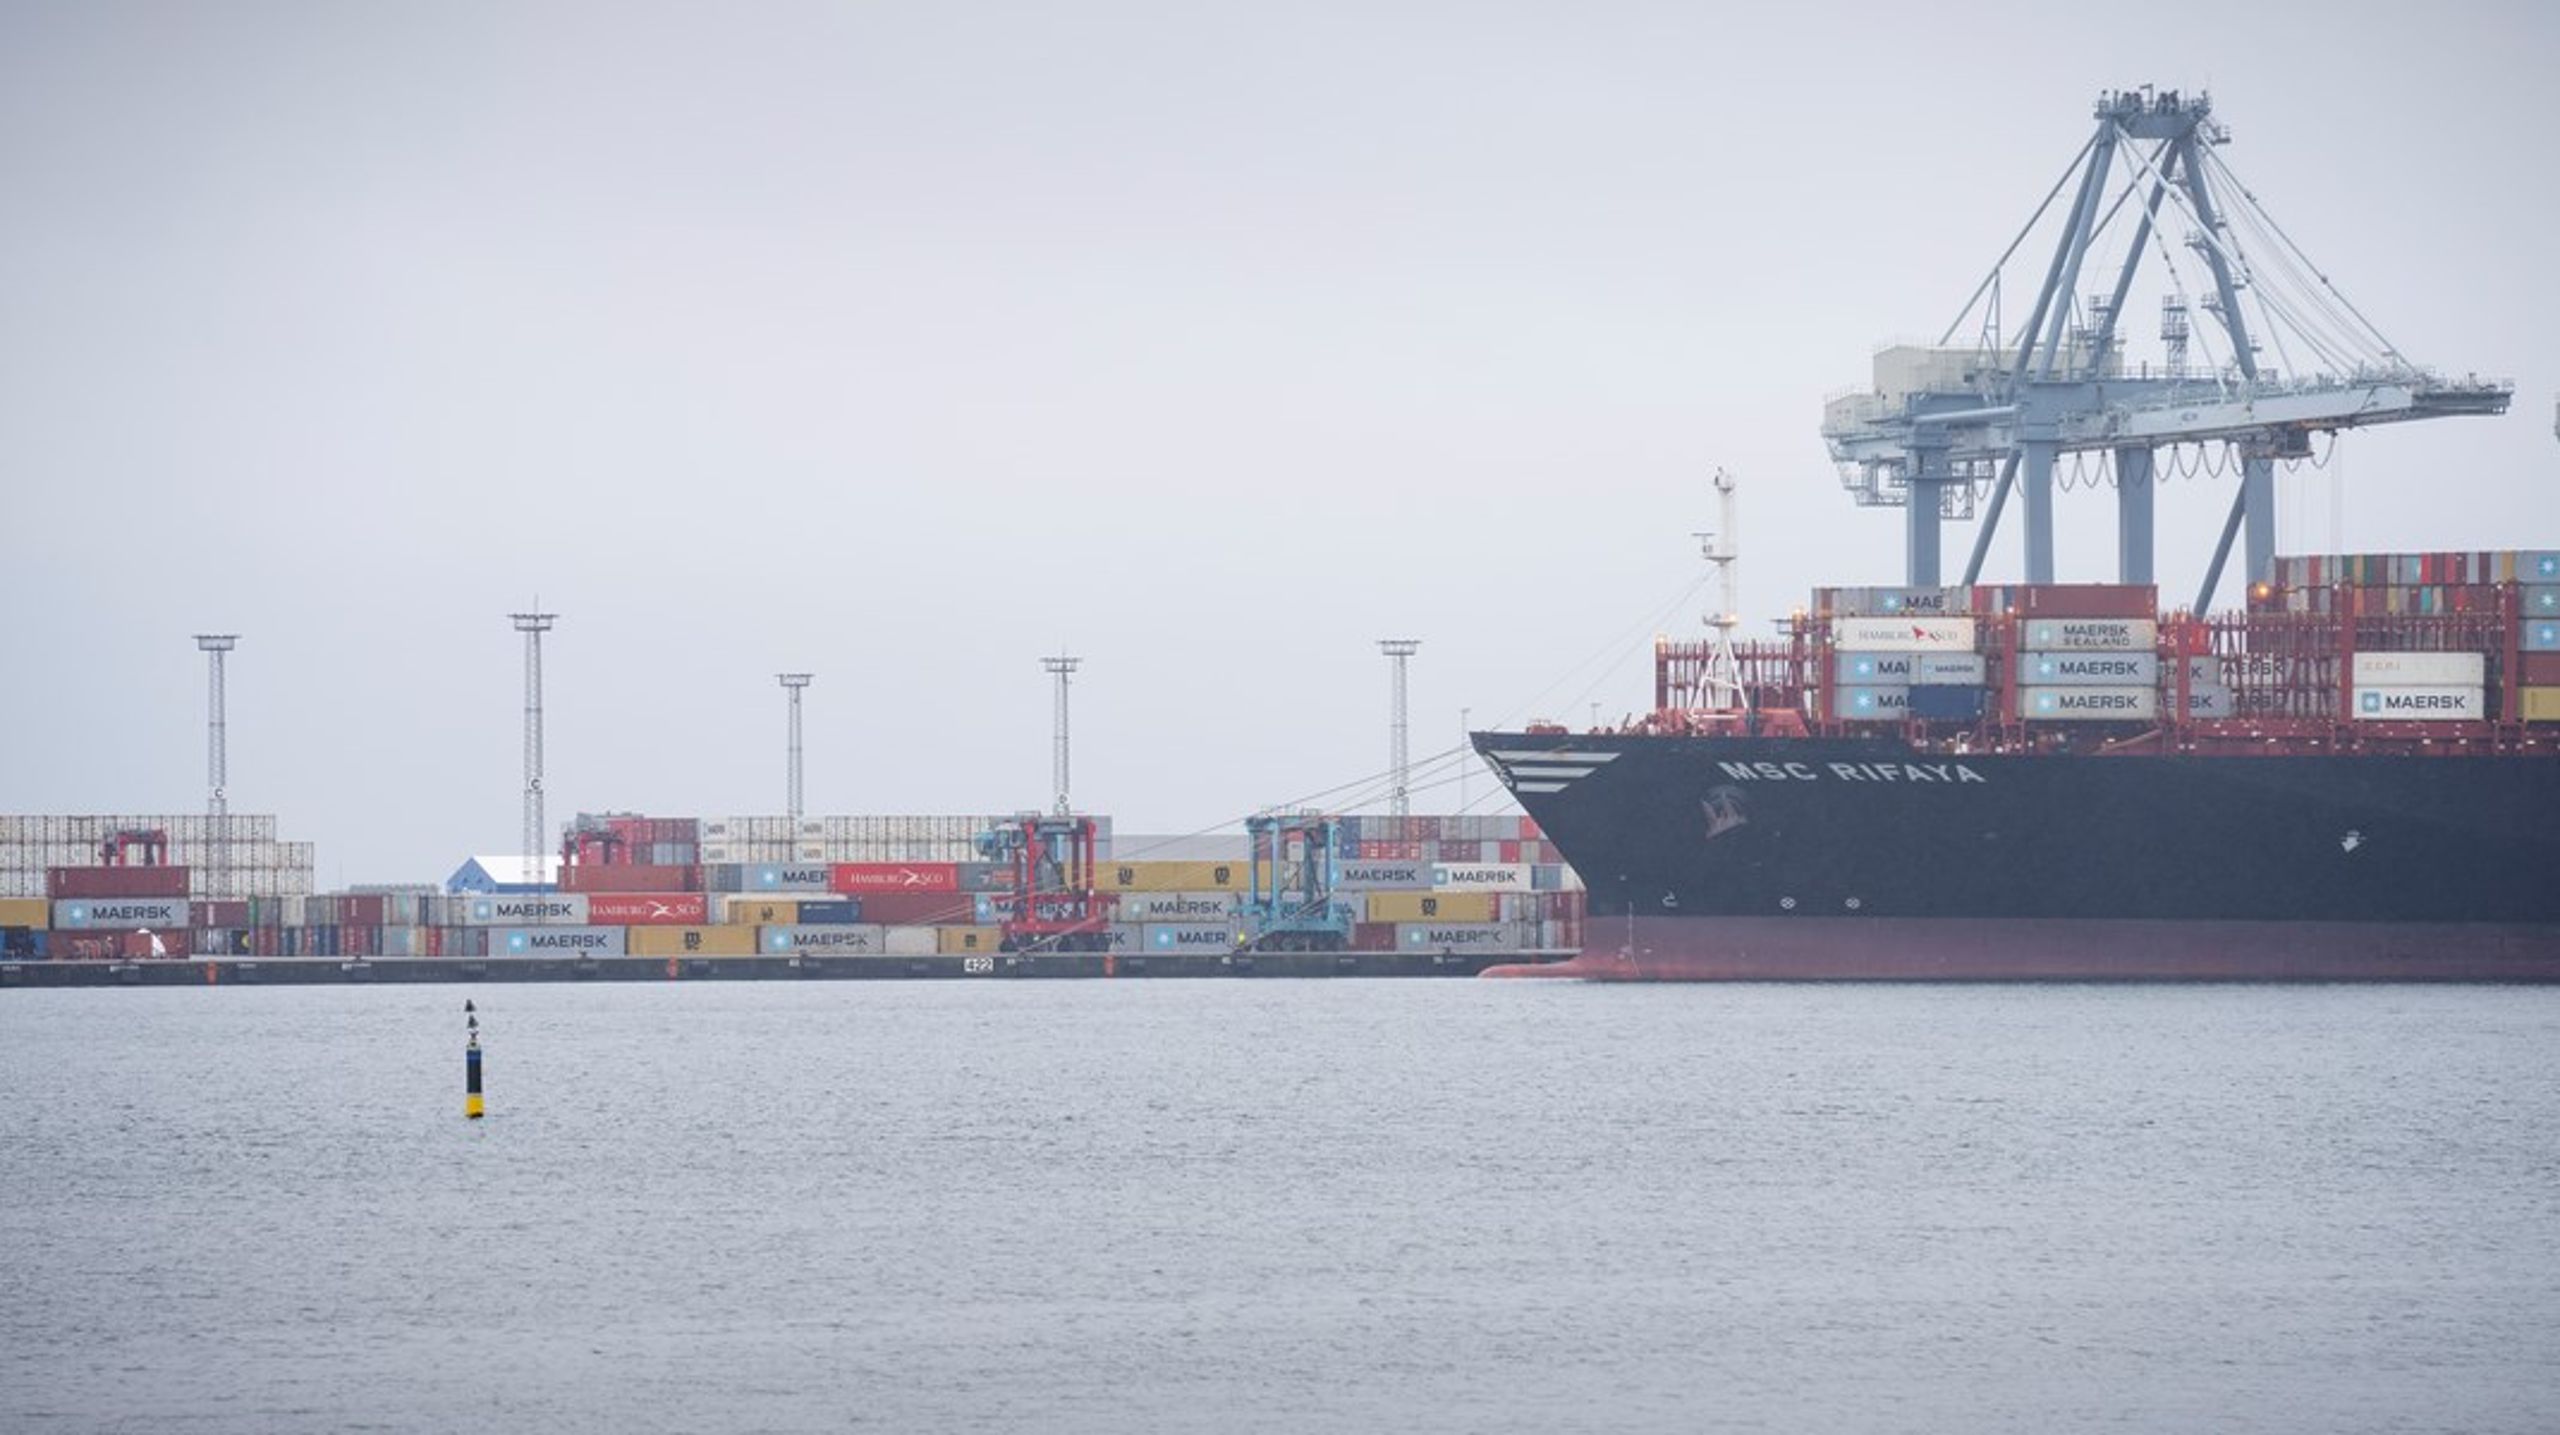 Vores havne er altafgørende for vores grønne omstilling. I Danmarksdemokraterne synes vi, at havnene er for kritisk infrastruktur og for vigtige til politisk nøleri og stedmoderlig behandling, skriver Kenneth Fredslund Petersen (DD).